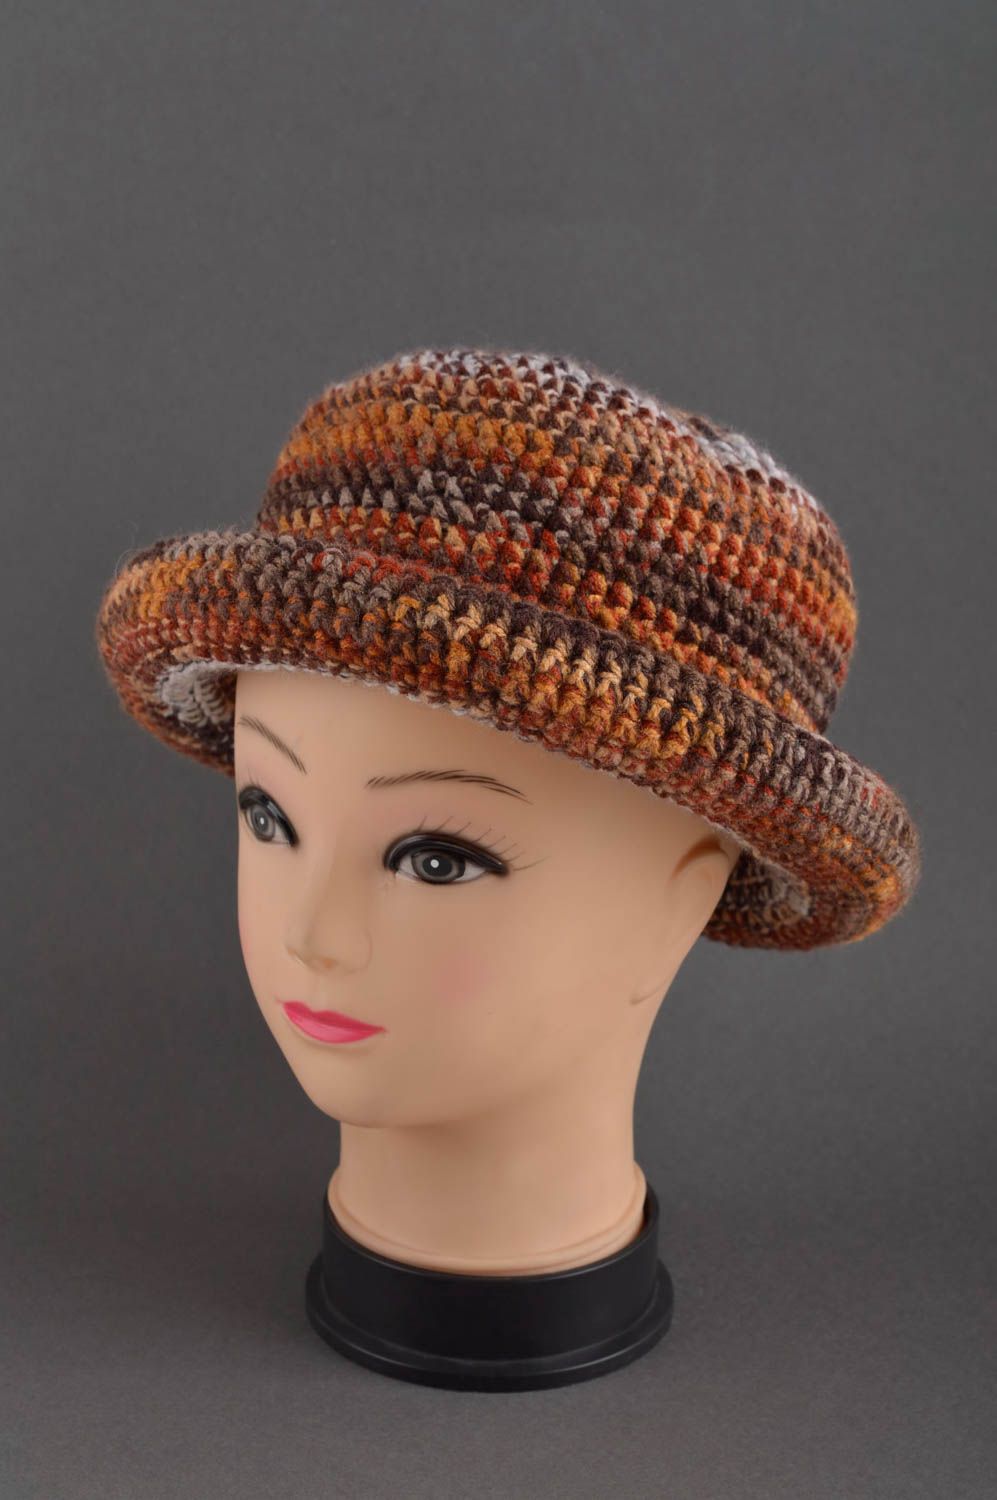 Handmade gehäkelter Hut Damen Accessoire ausgefallener Hut für Winter stilvoll foto 1